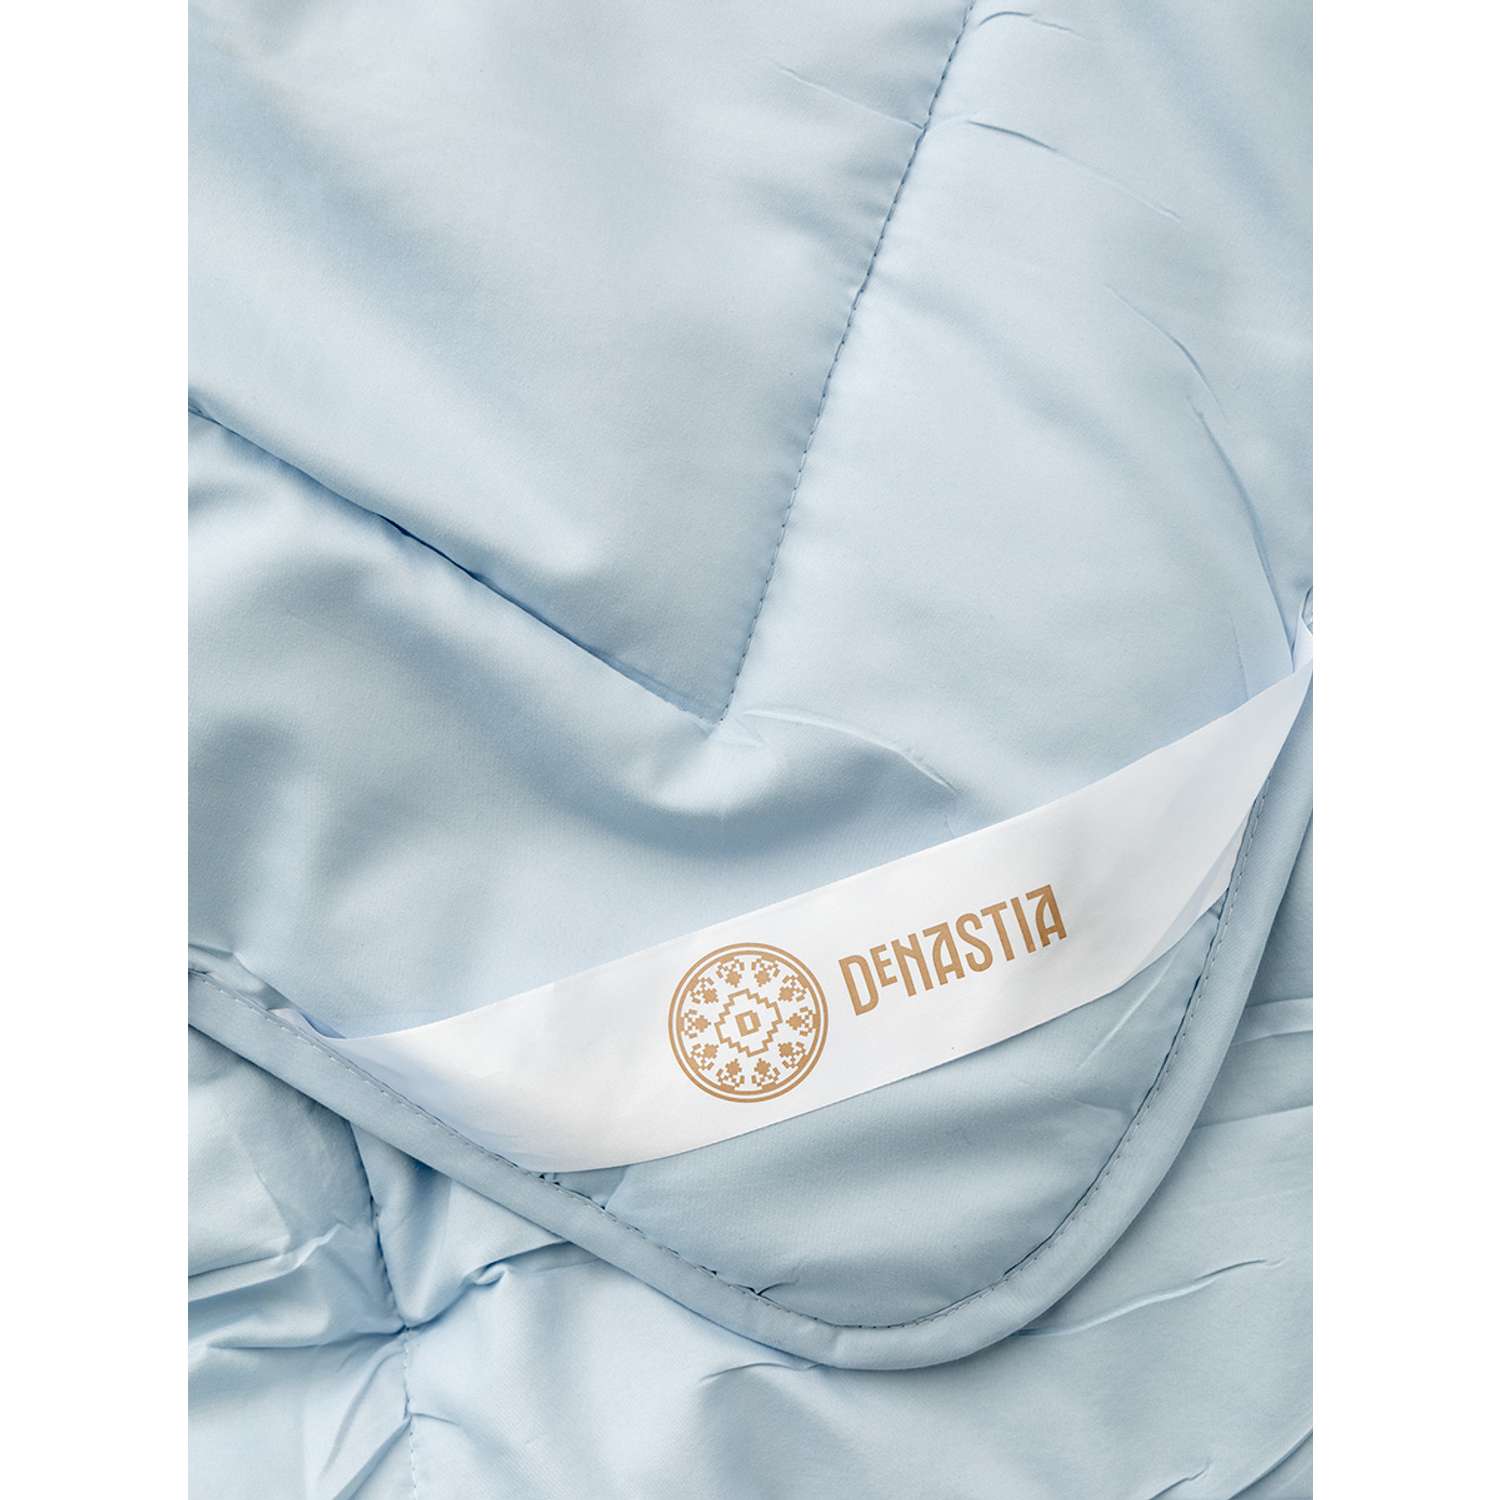 Одеяло/покрывало DeNASTIA 200x220 см голубой R020019 - фото 4